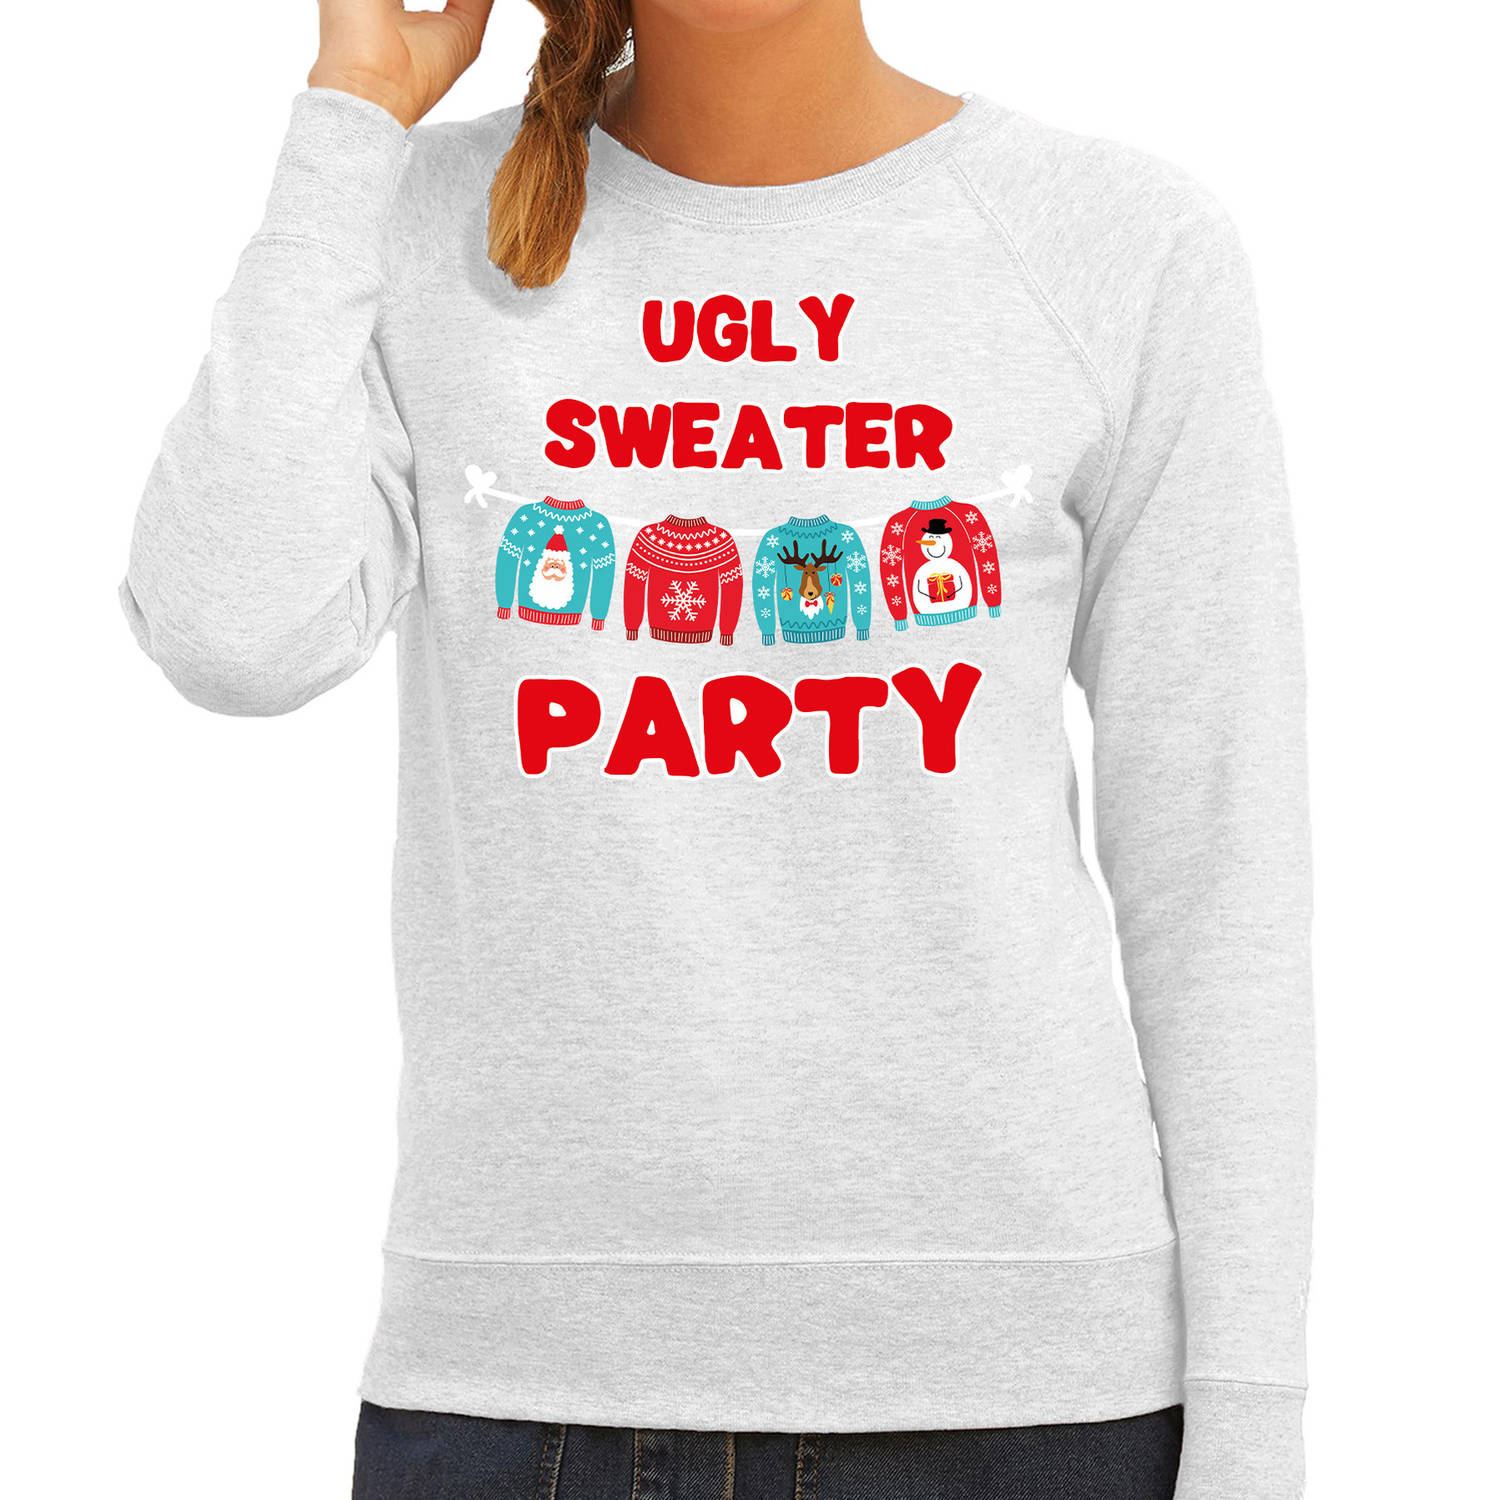 Grijze Kersttrui / Kerstkleding Ugly sweater party voor dames L - kerst truien